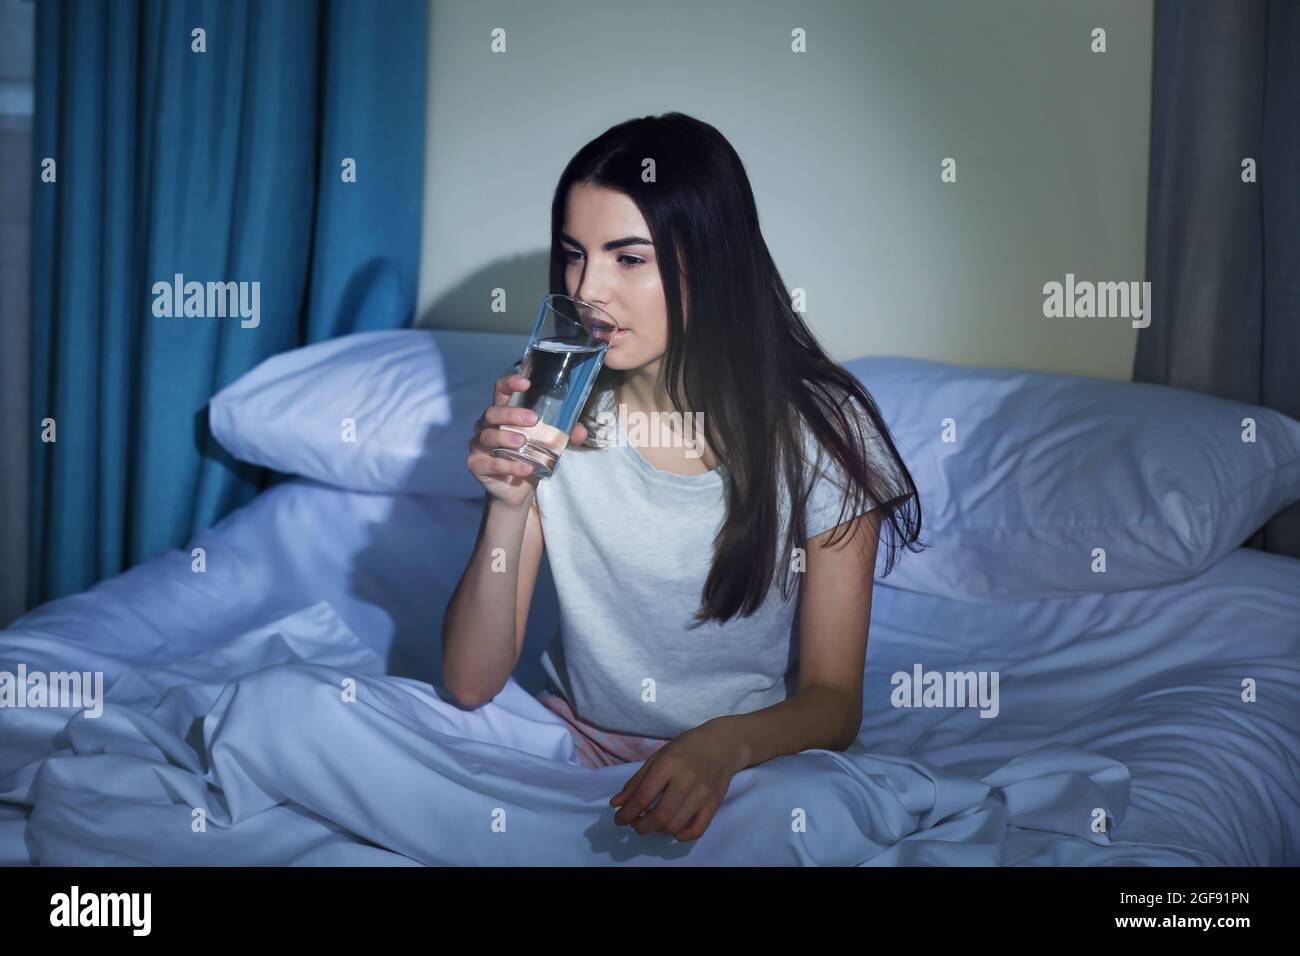 Junge Frau, die nachts ein Glas Wasser im Bett trinkt Stockfotografie -  Alamy